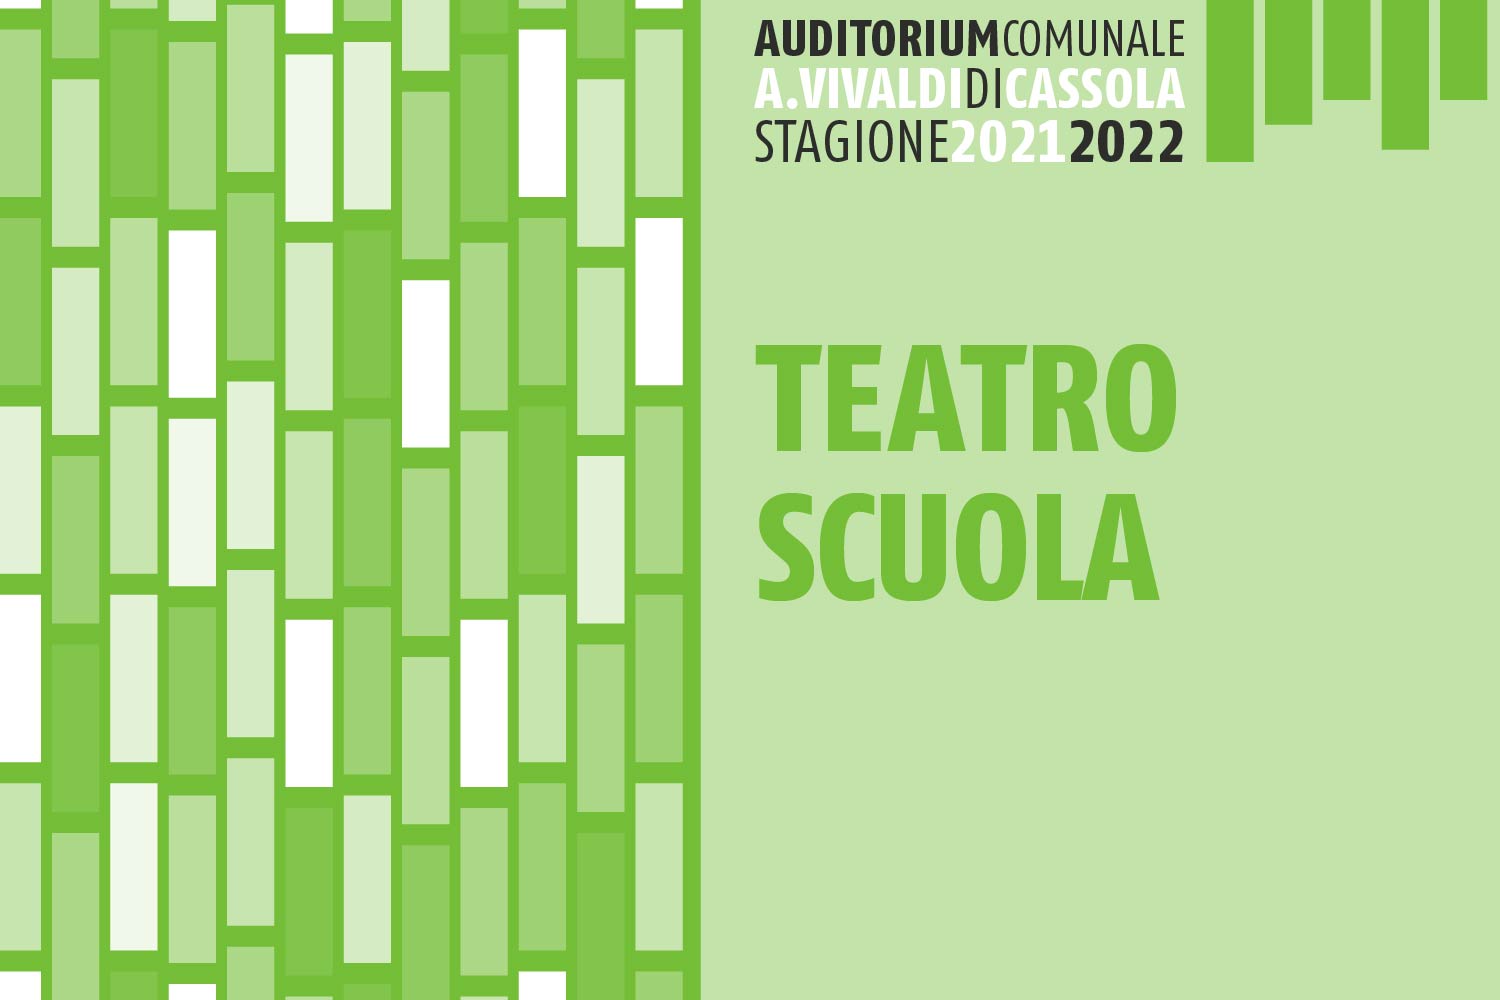 teatro_scuola_2021_2022